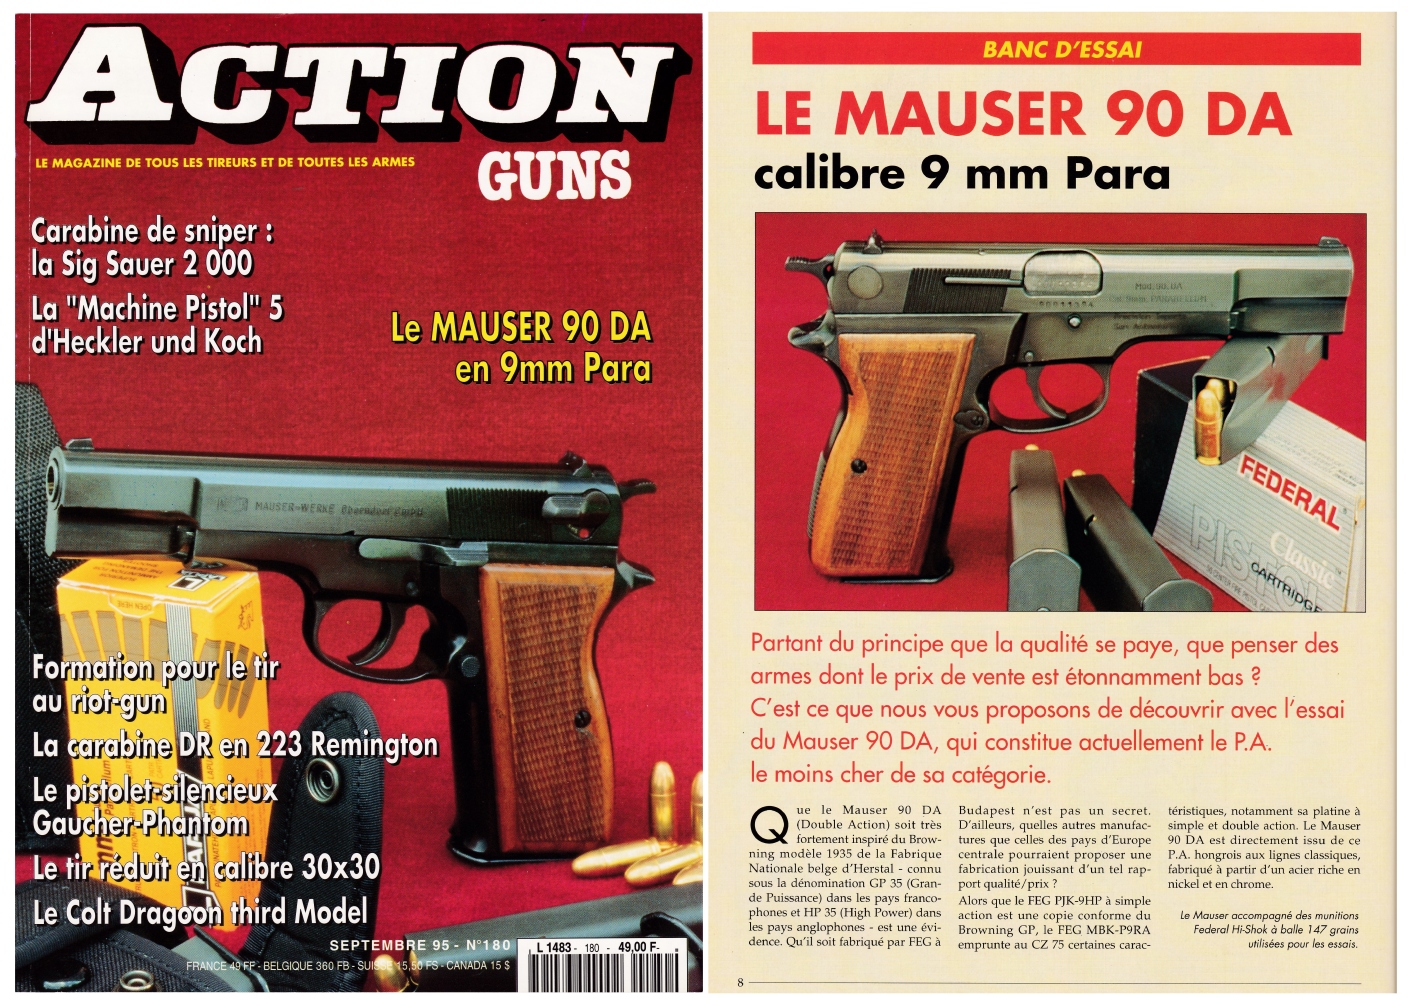 Le banc d’essai du pistolet Mauser 90 DA a été publié sur 6 pages dans le magazine Action Guns n°180 (septembre 1995).